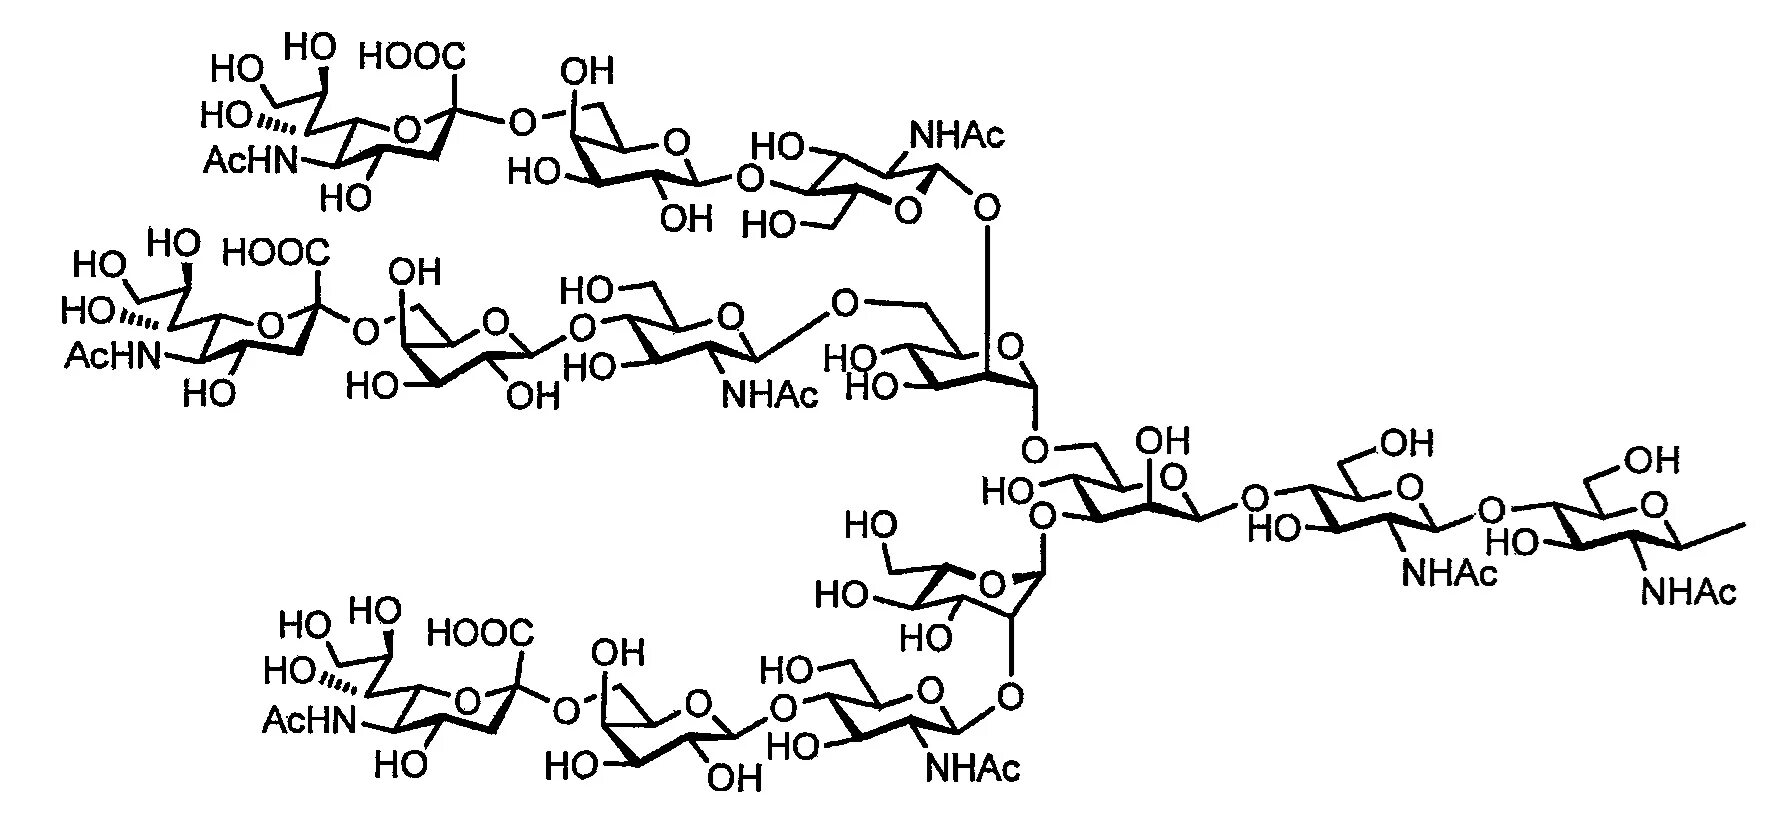 13 синтезы. Полипептид формула химическая. Серебра протеинат формула химическая. Полипептид структурная формула. Серебра протеинат формула структурная.